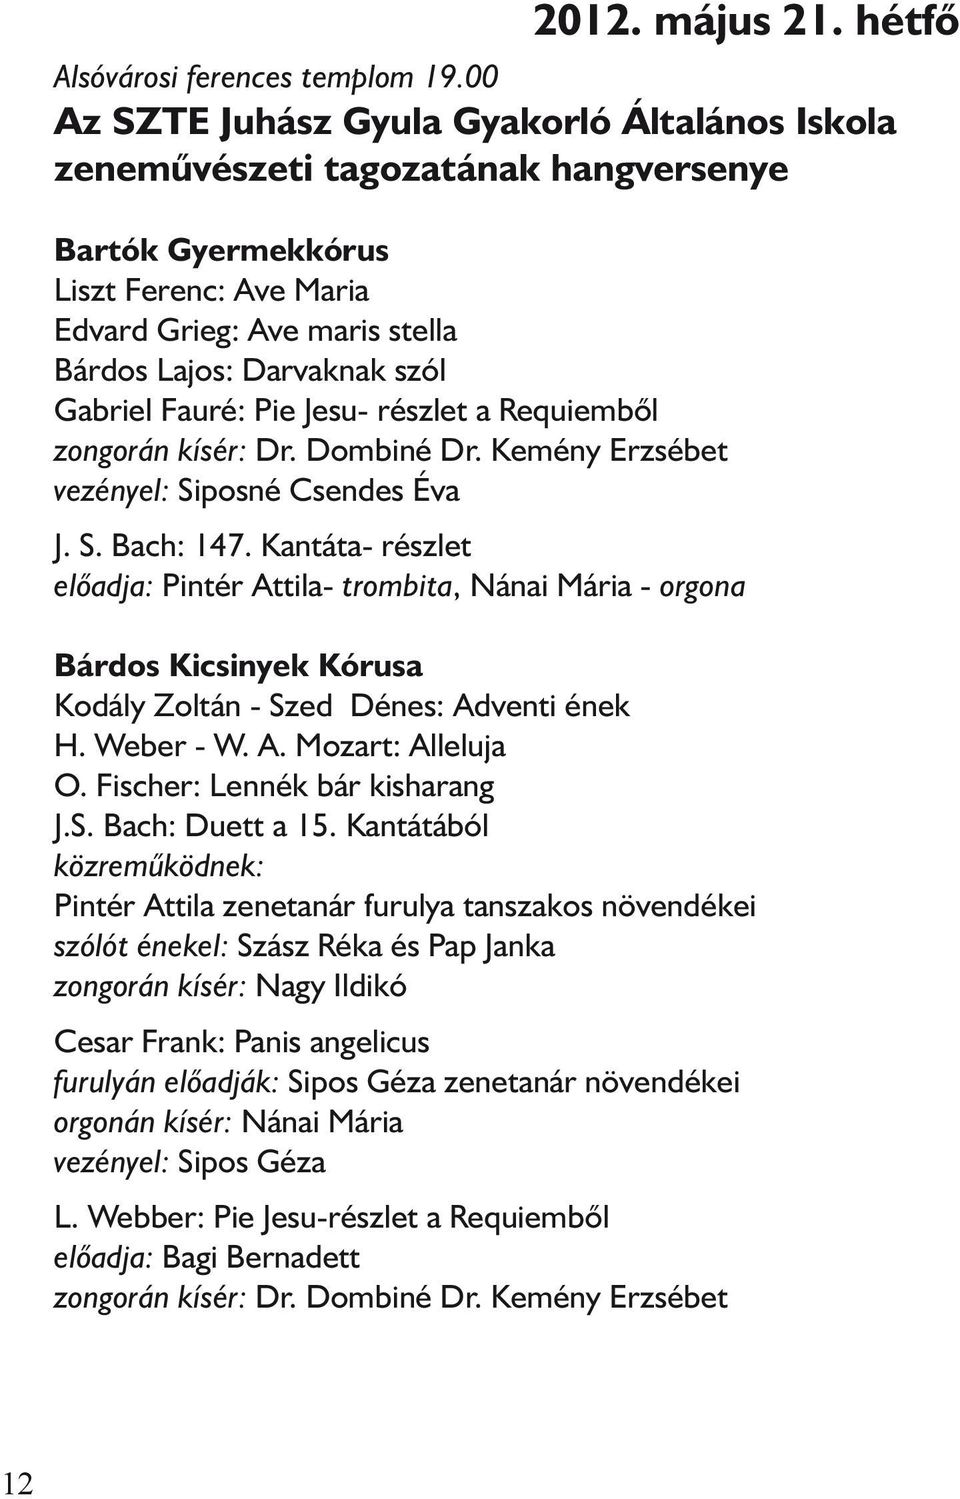 Egyházzenei hónap. Szeged PDF Free Download